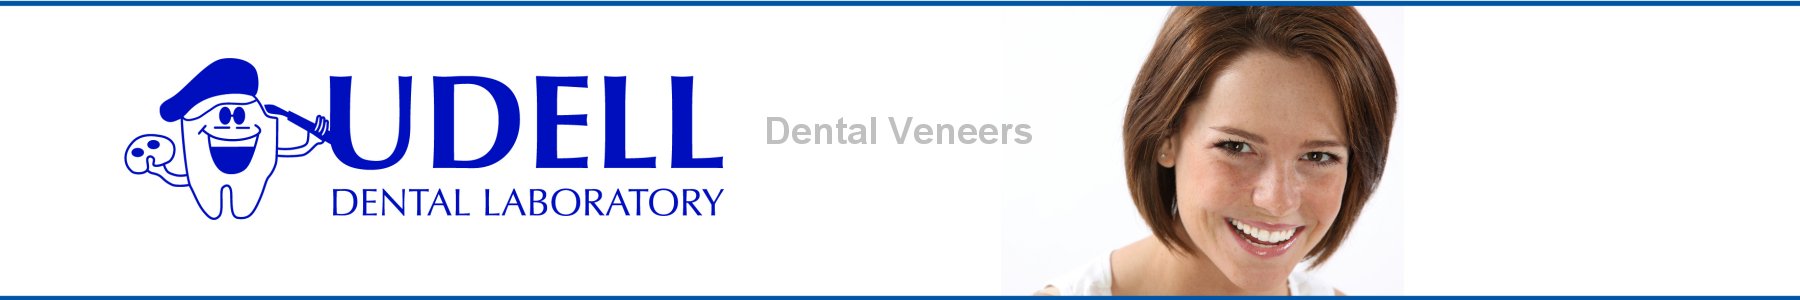 Udell Dental Laboratory Veneers